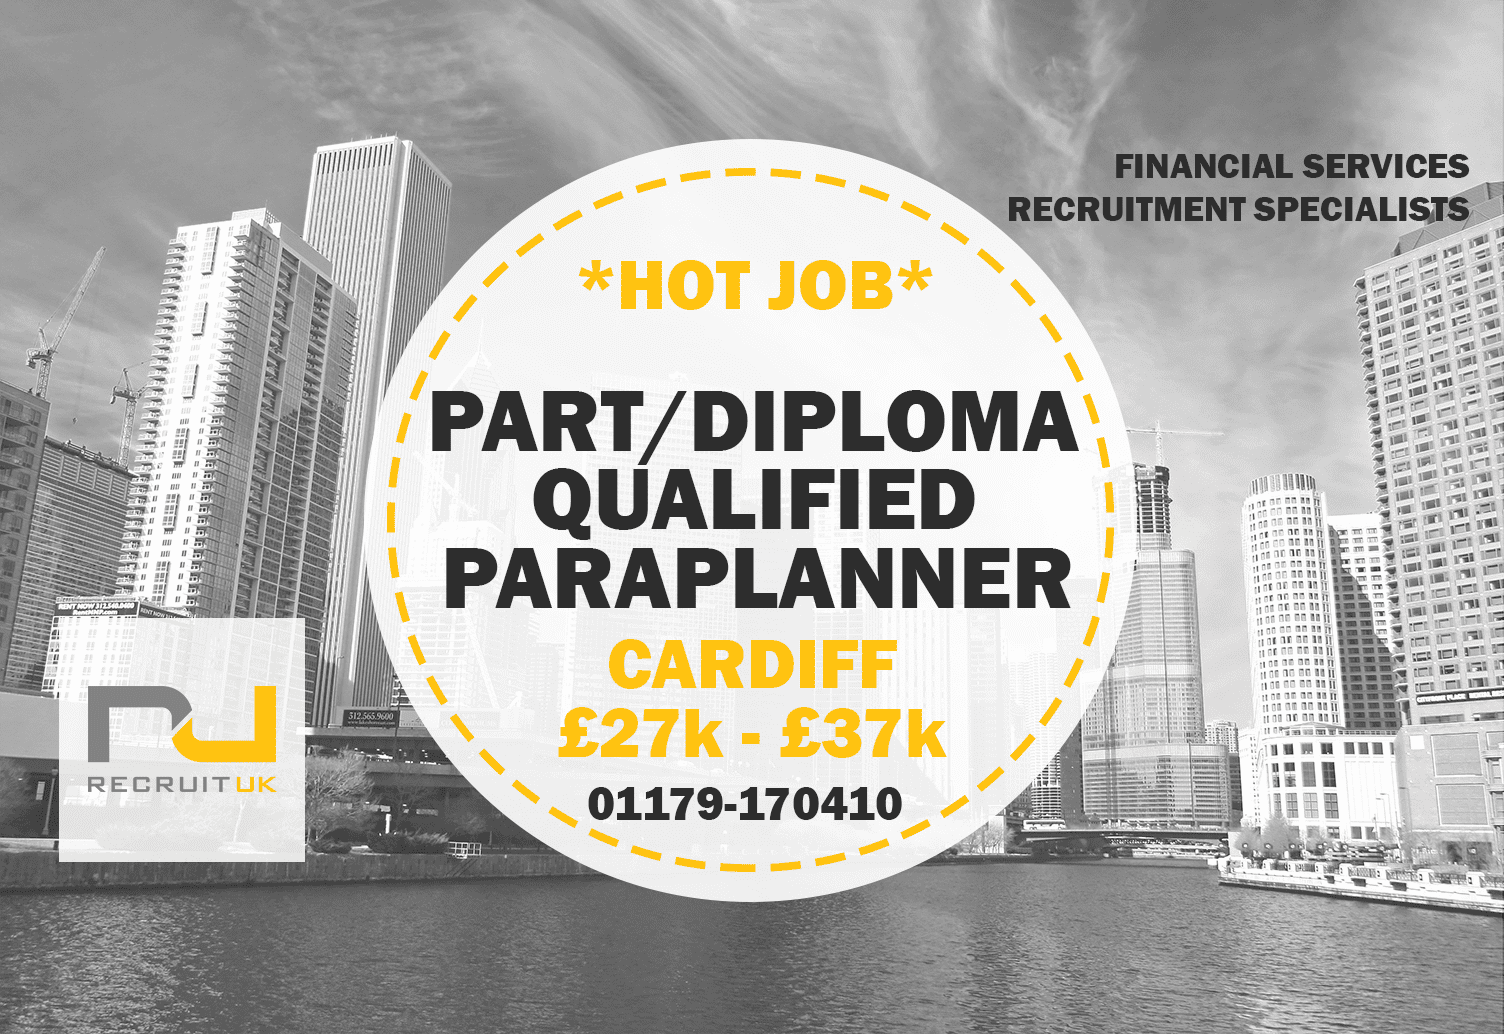 Part/Diploma Qualified Paraplanner Cardiff Recruit UK